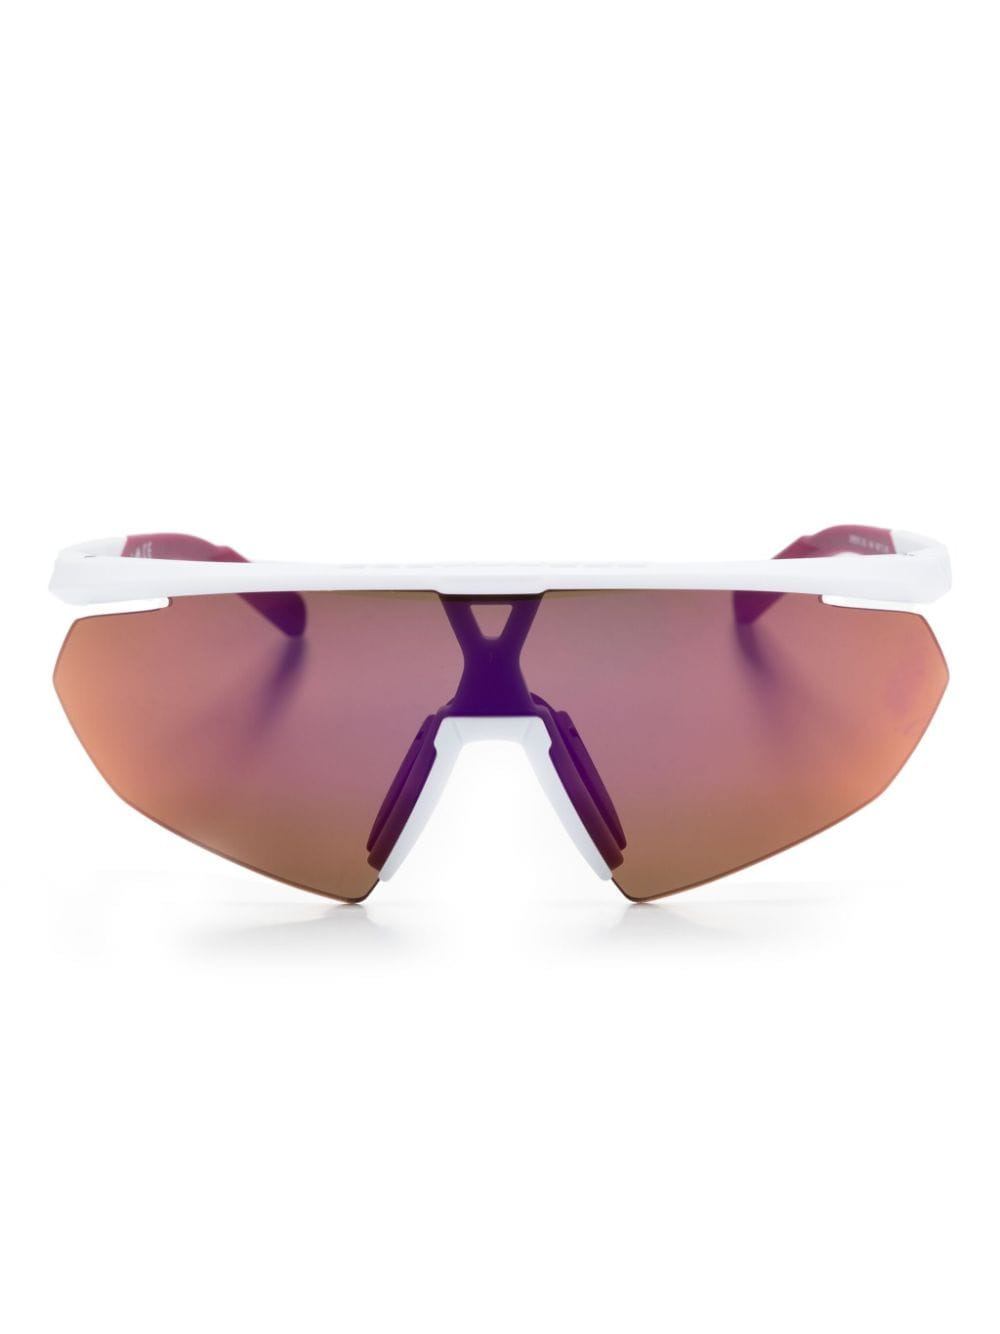 Adidas Originals Sp0015 盾形镜框太阳眼镜 In White